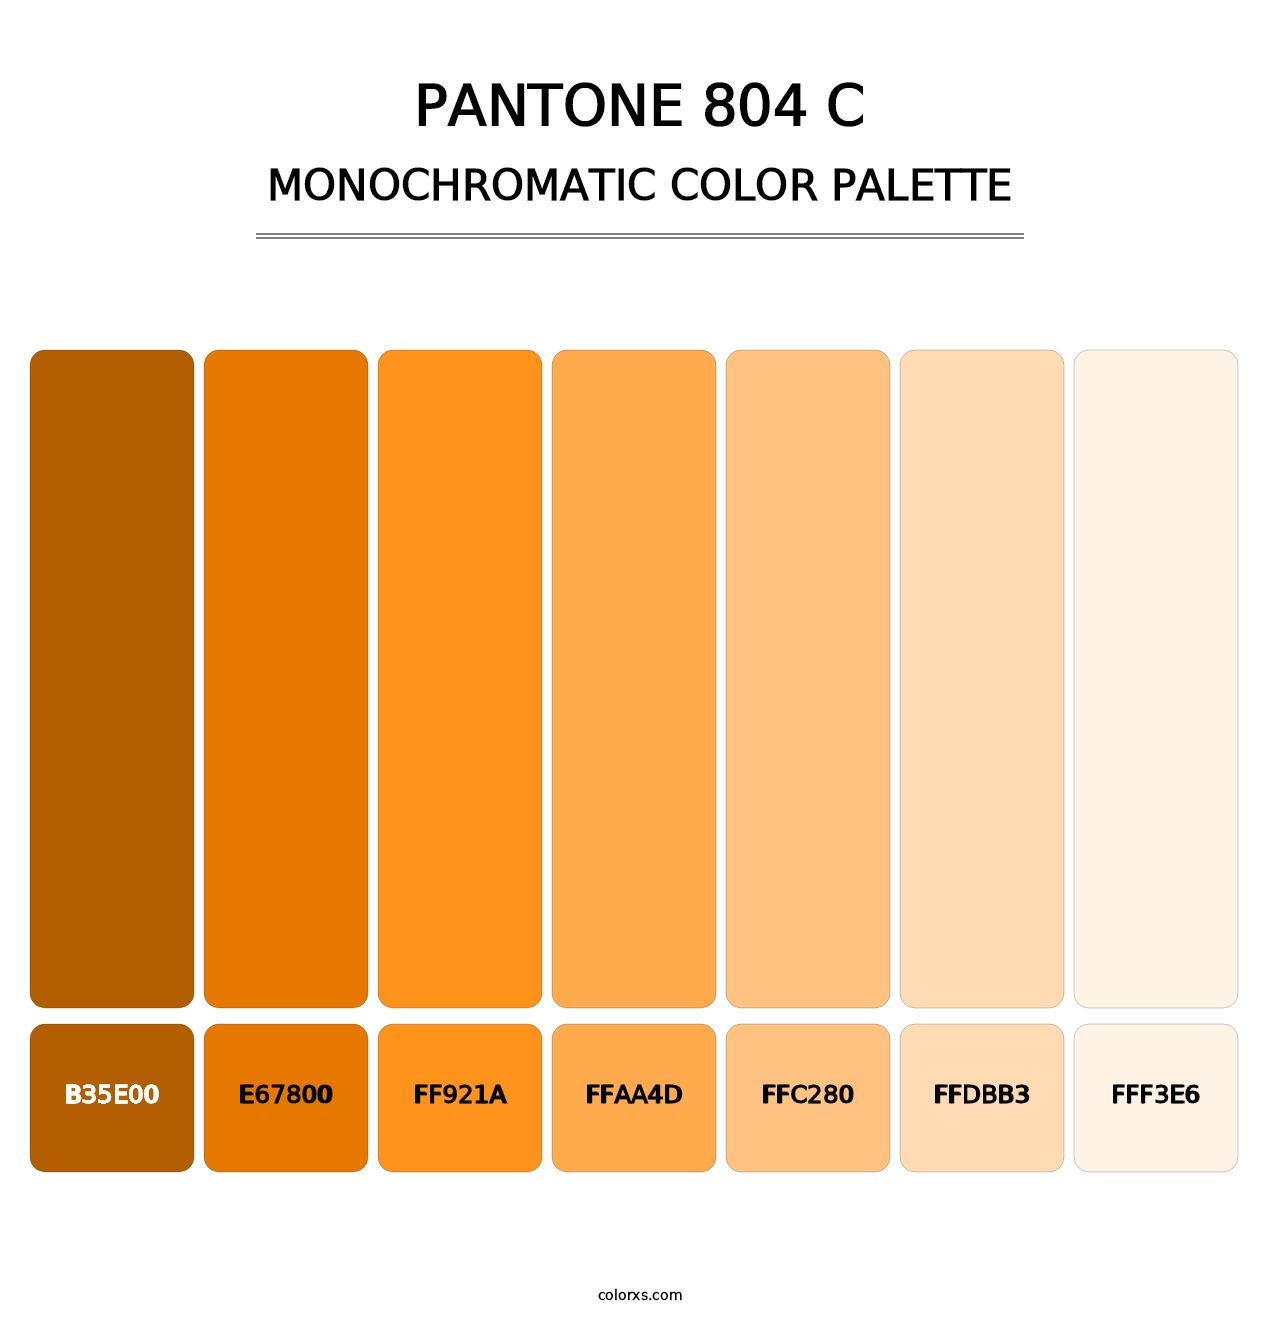 PANTONE 804 C - Monochromatic Color Palette